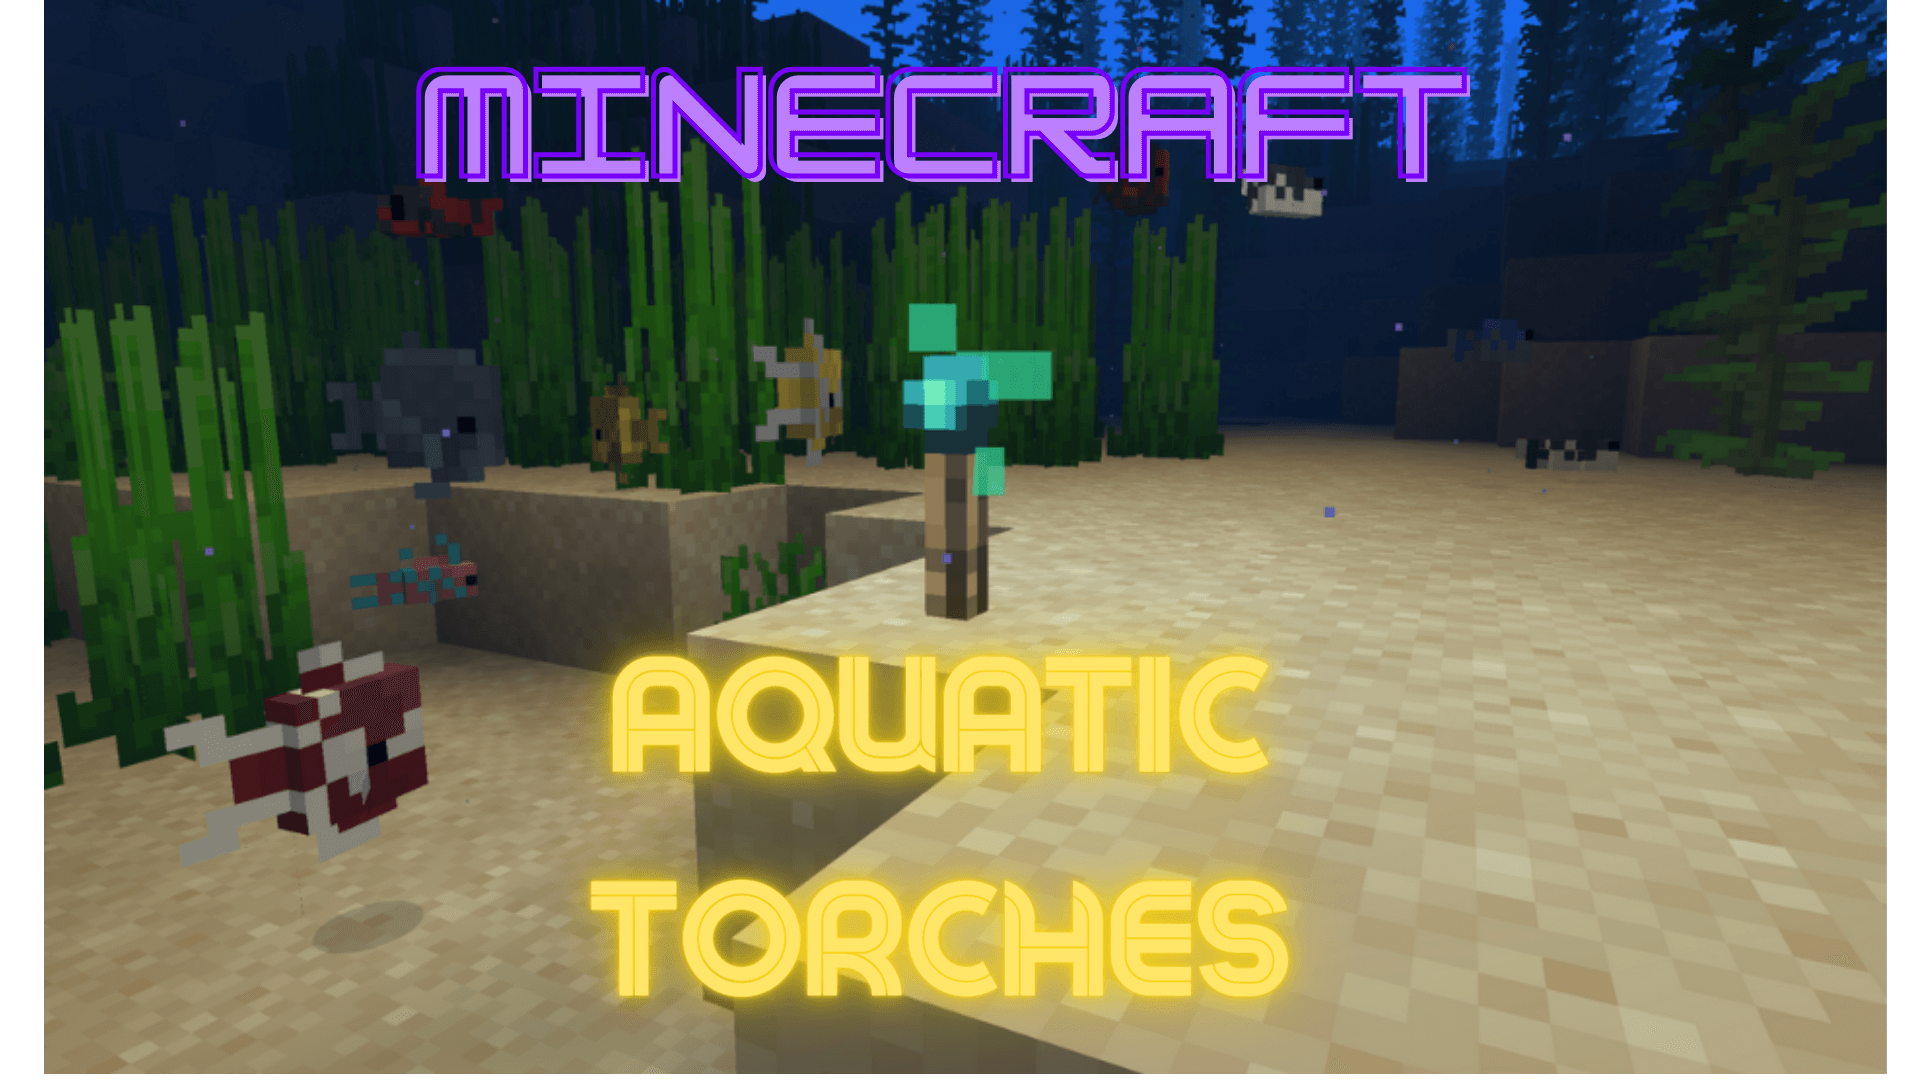 Aquatic Torches